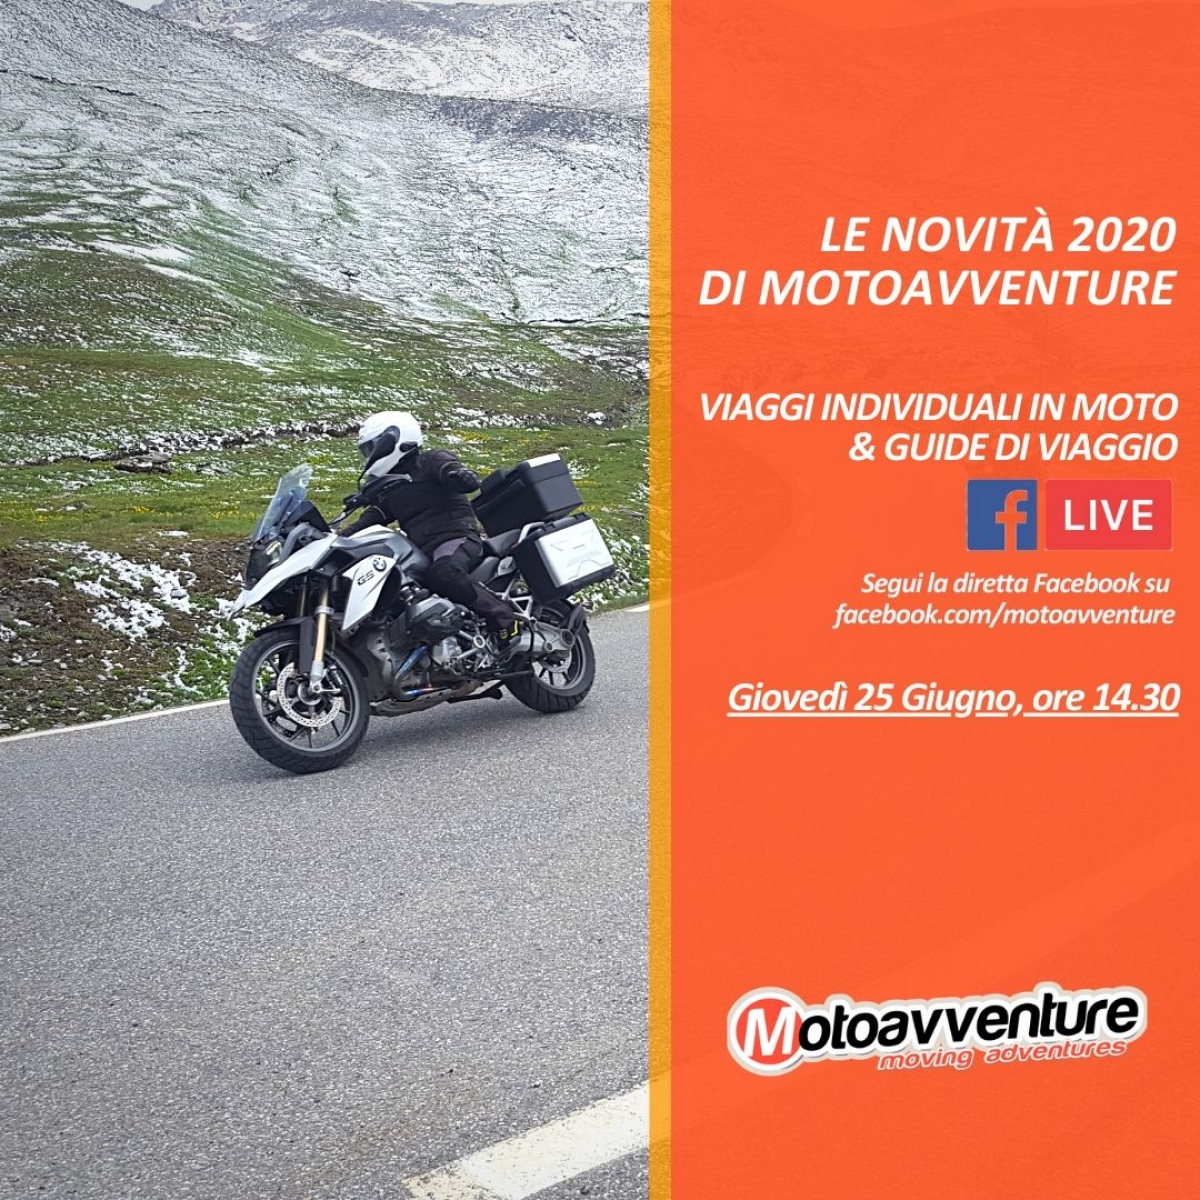 Le novità 2020 di Motoavventure: segui la diretta Facebook di Giovedì 25 Giugno!